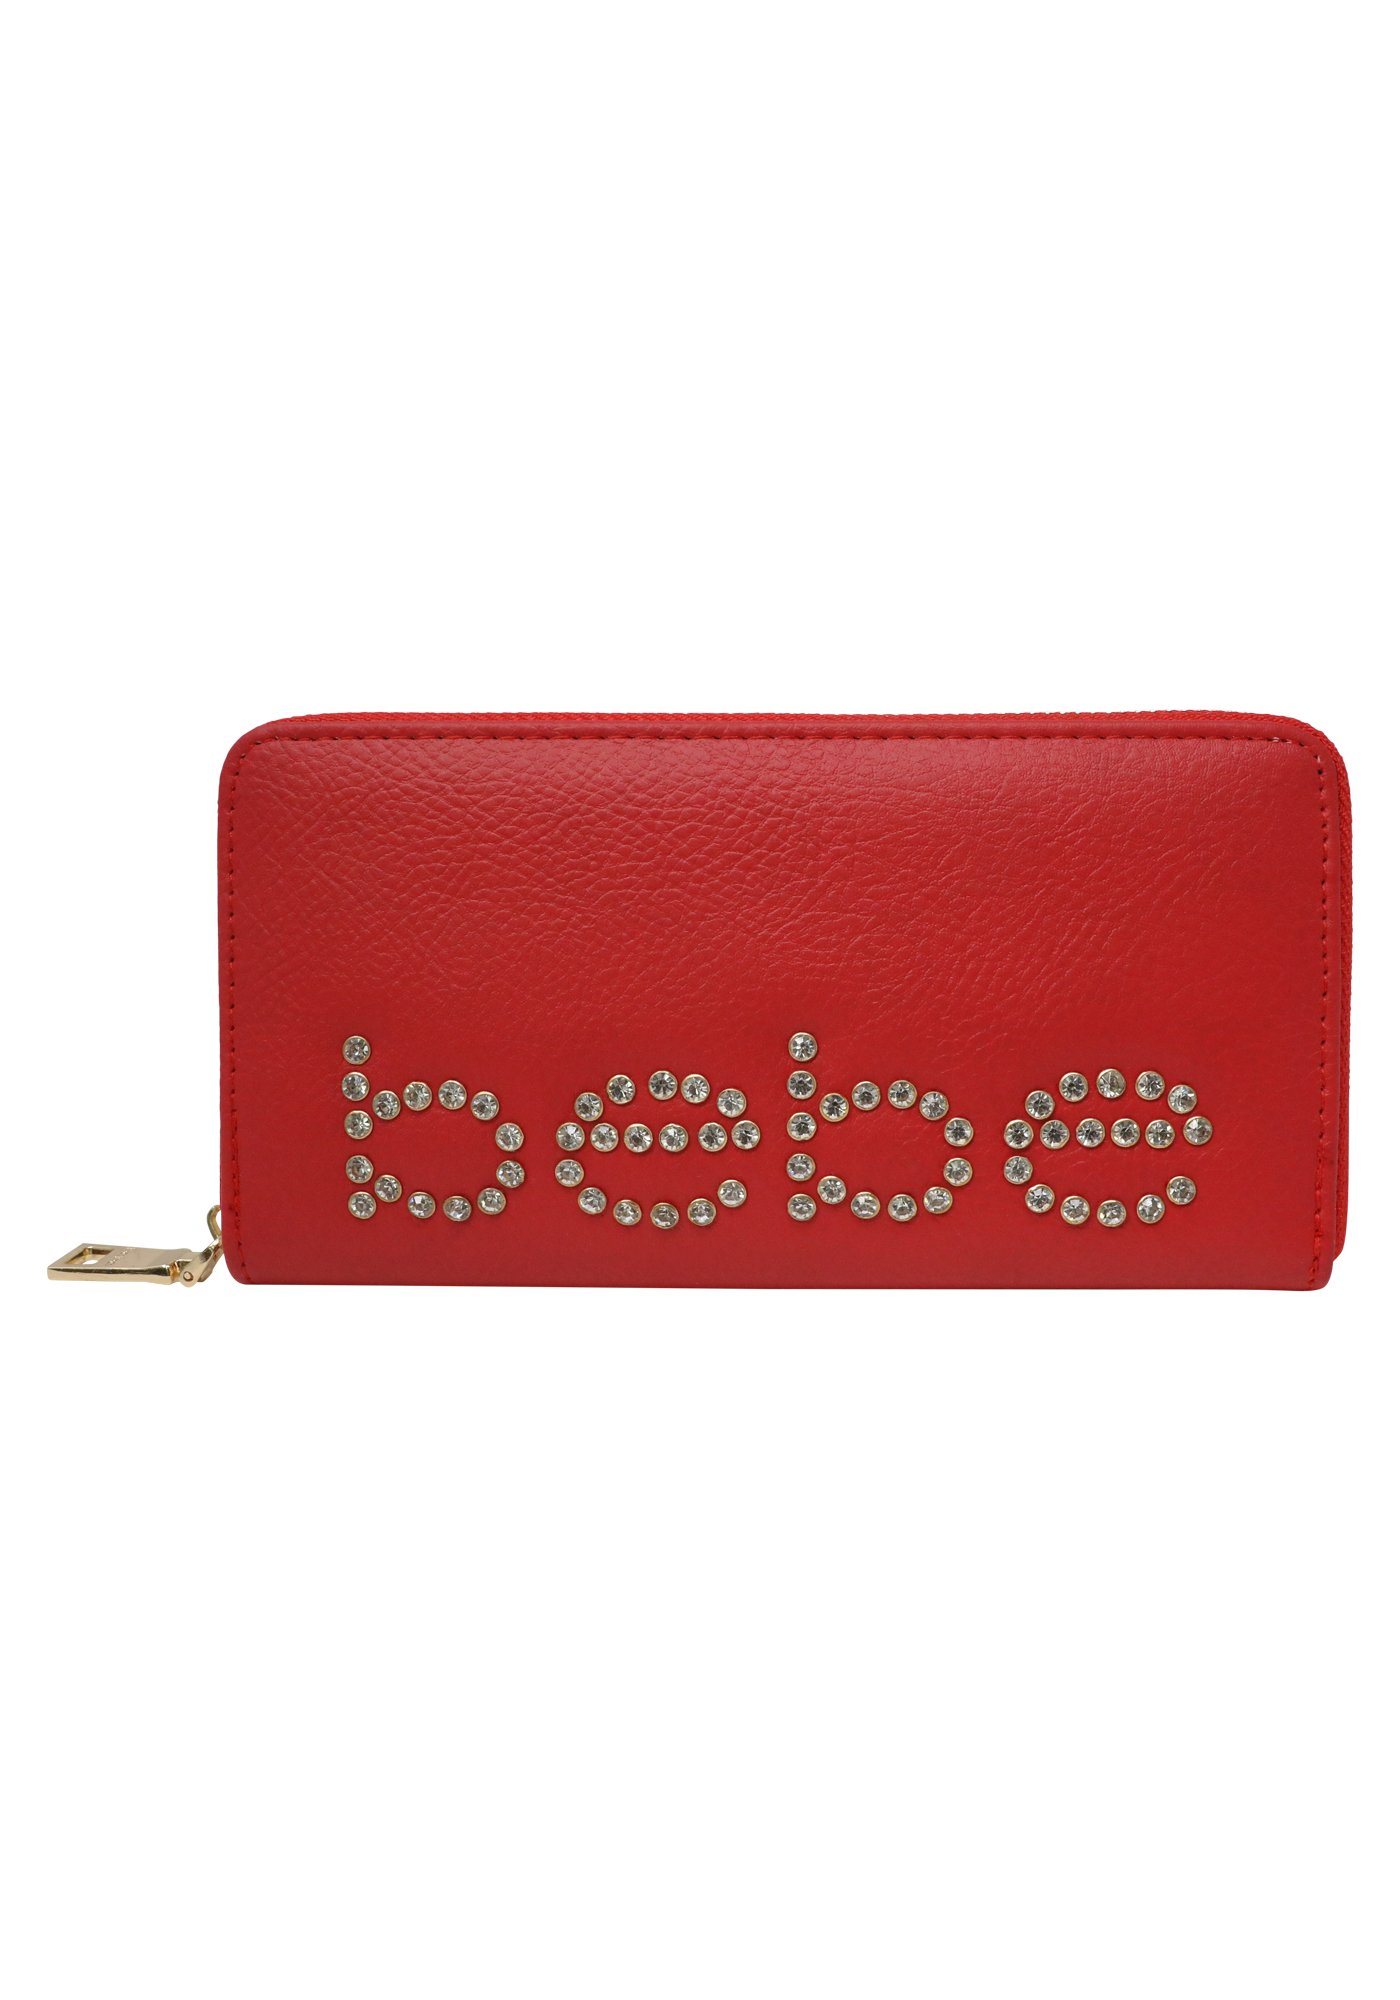 Bebe Women's Jetta Wallet, Size Mini in Red